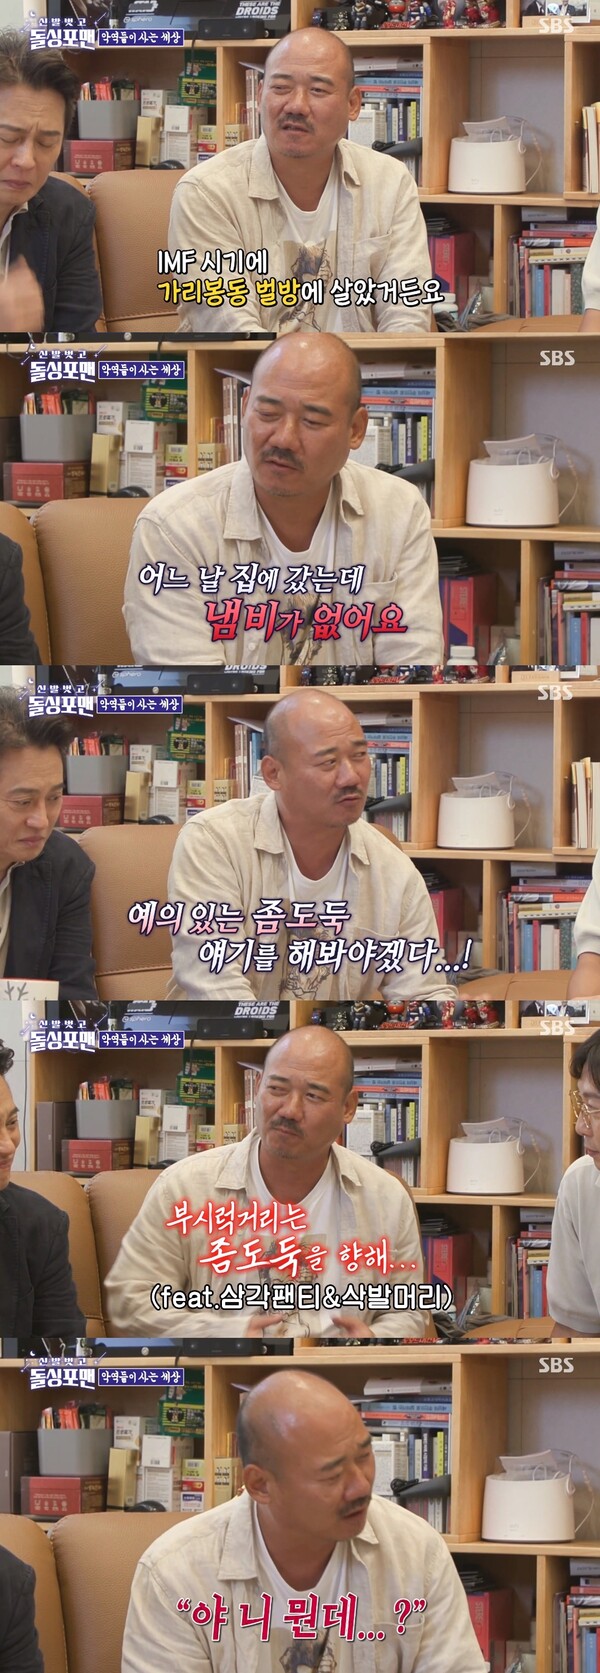 좀도둑도 김준배를 만나고 벌벌 떨었다. 출처: SBS ‘신발 벗고 돌싱포맨’